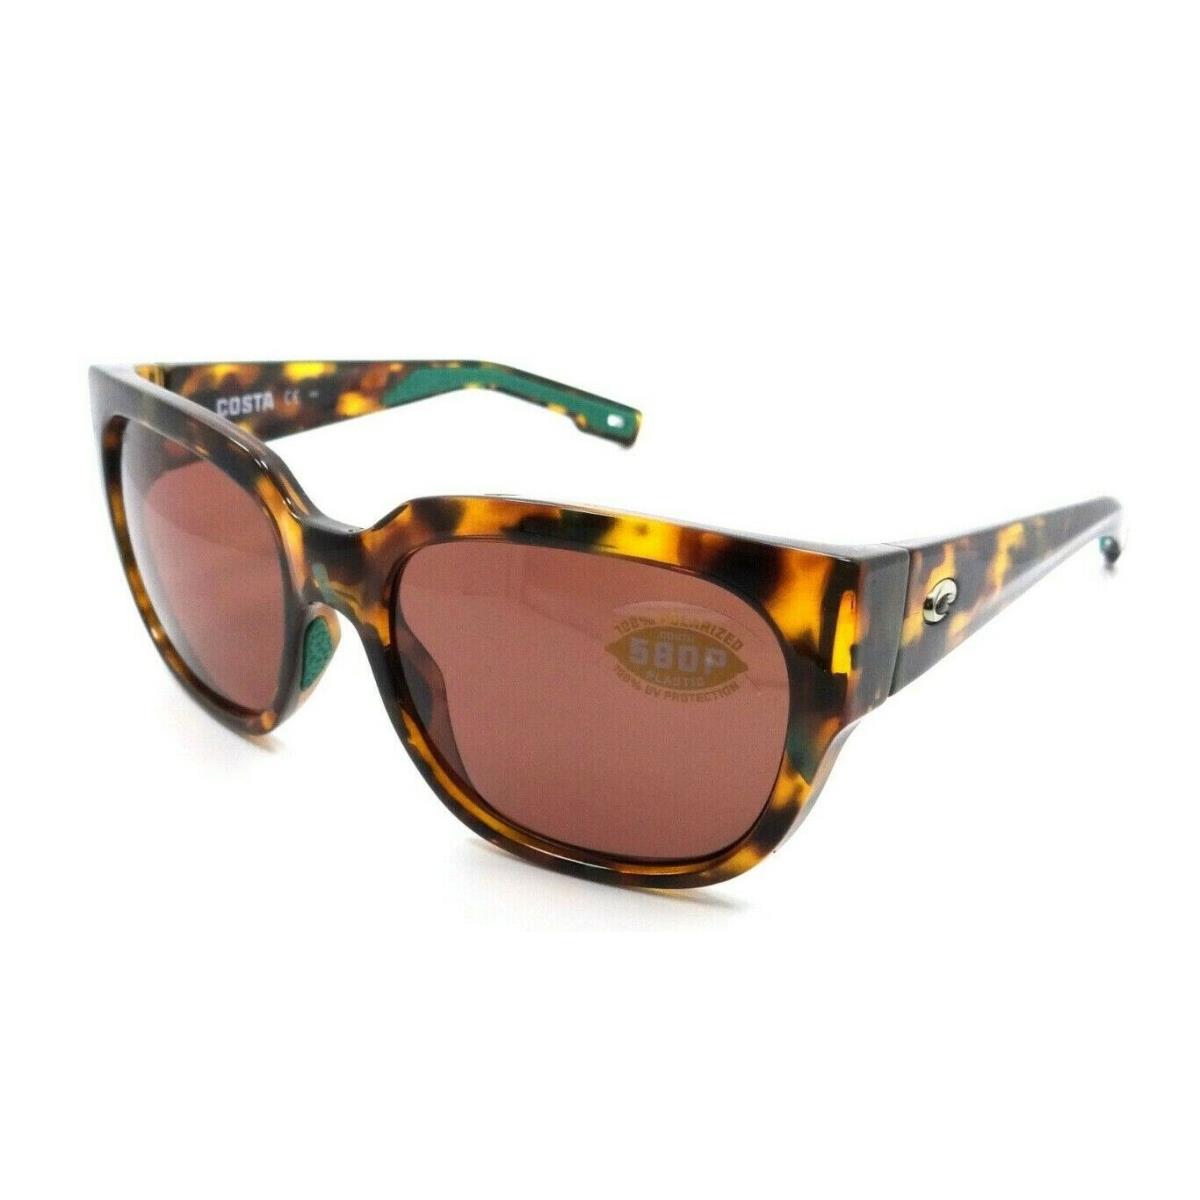 Costa Del Mar Sunglasses Waterwoman 250 Shiny Palm Tortoise / Copper 580P